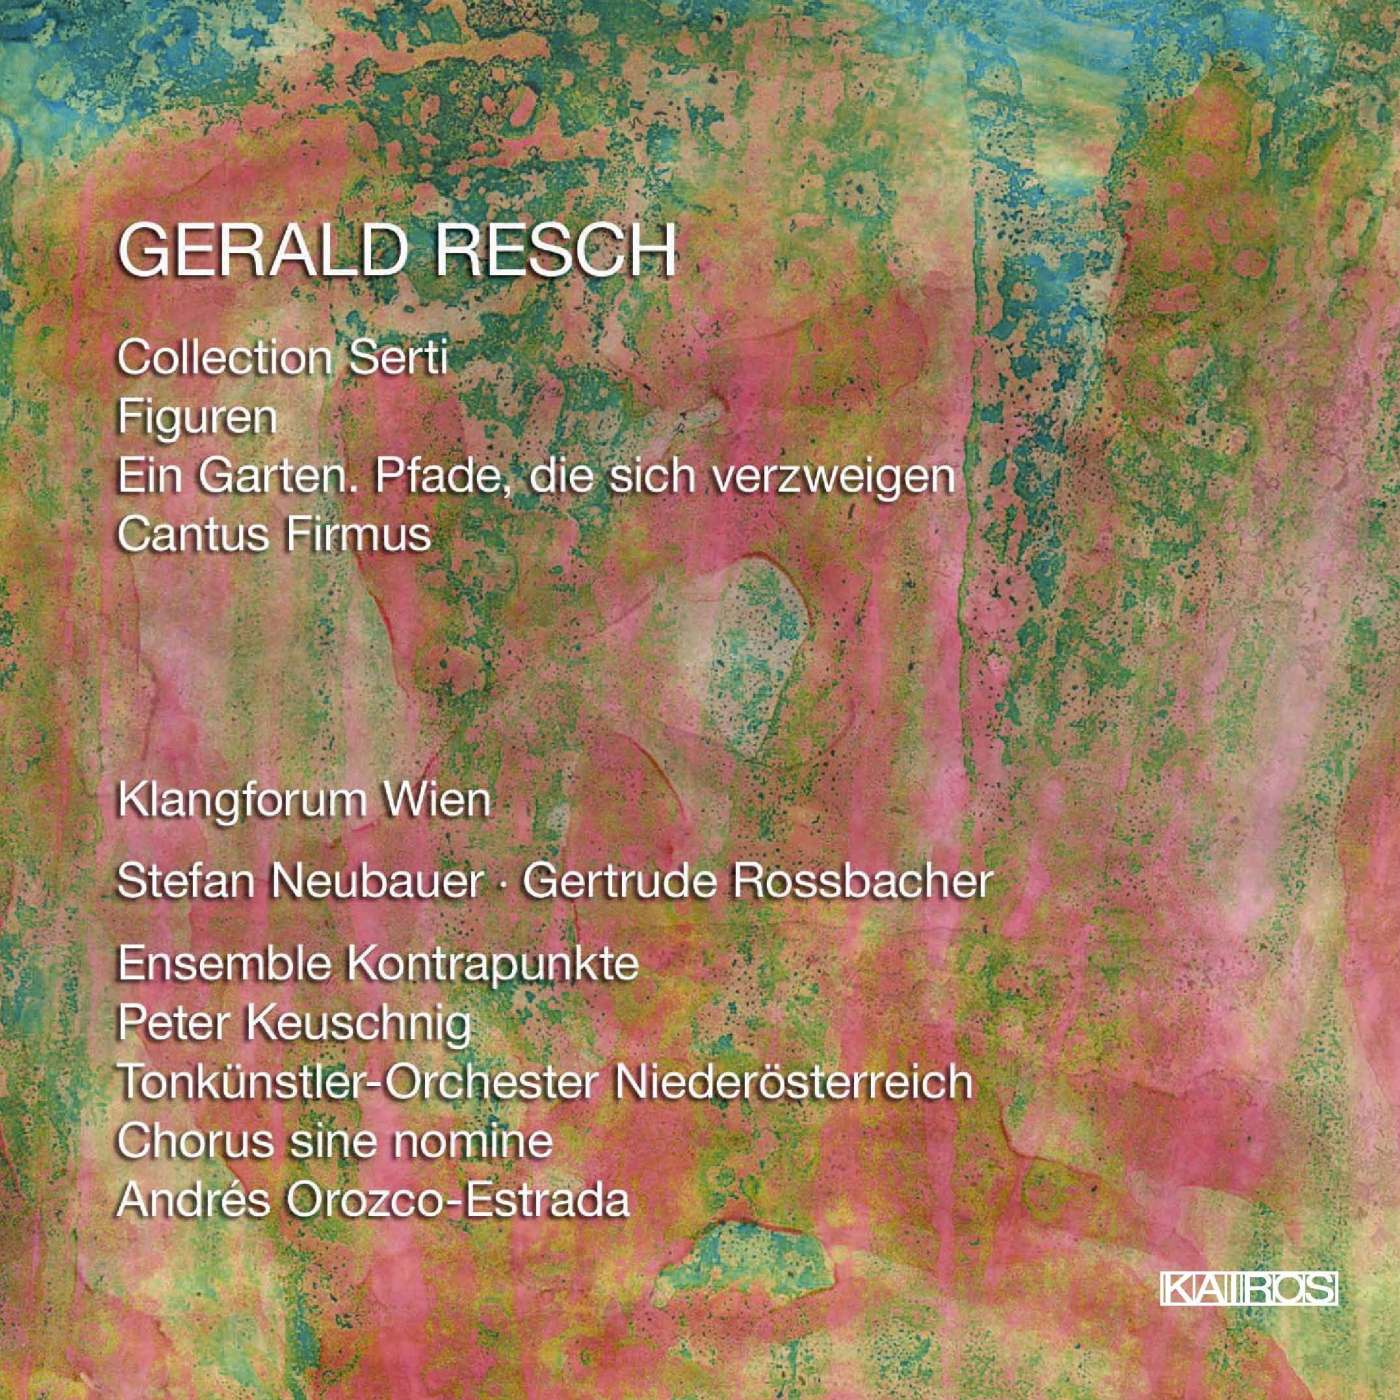 Gerald Resch - Collection Serti